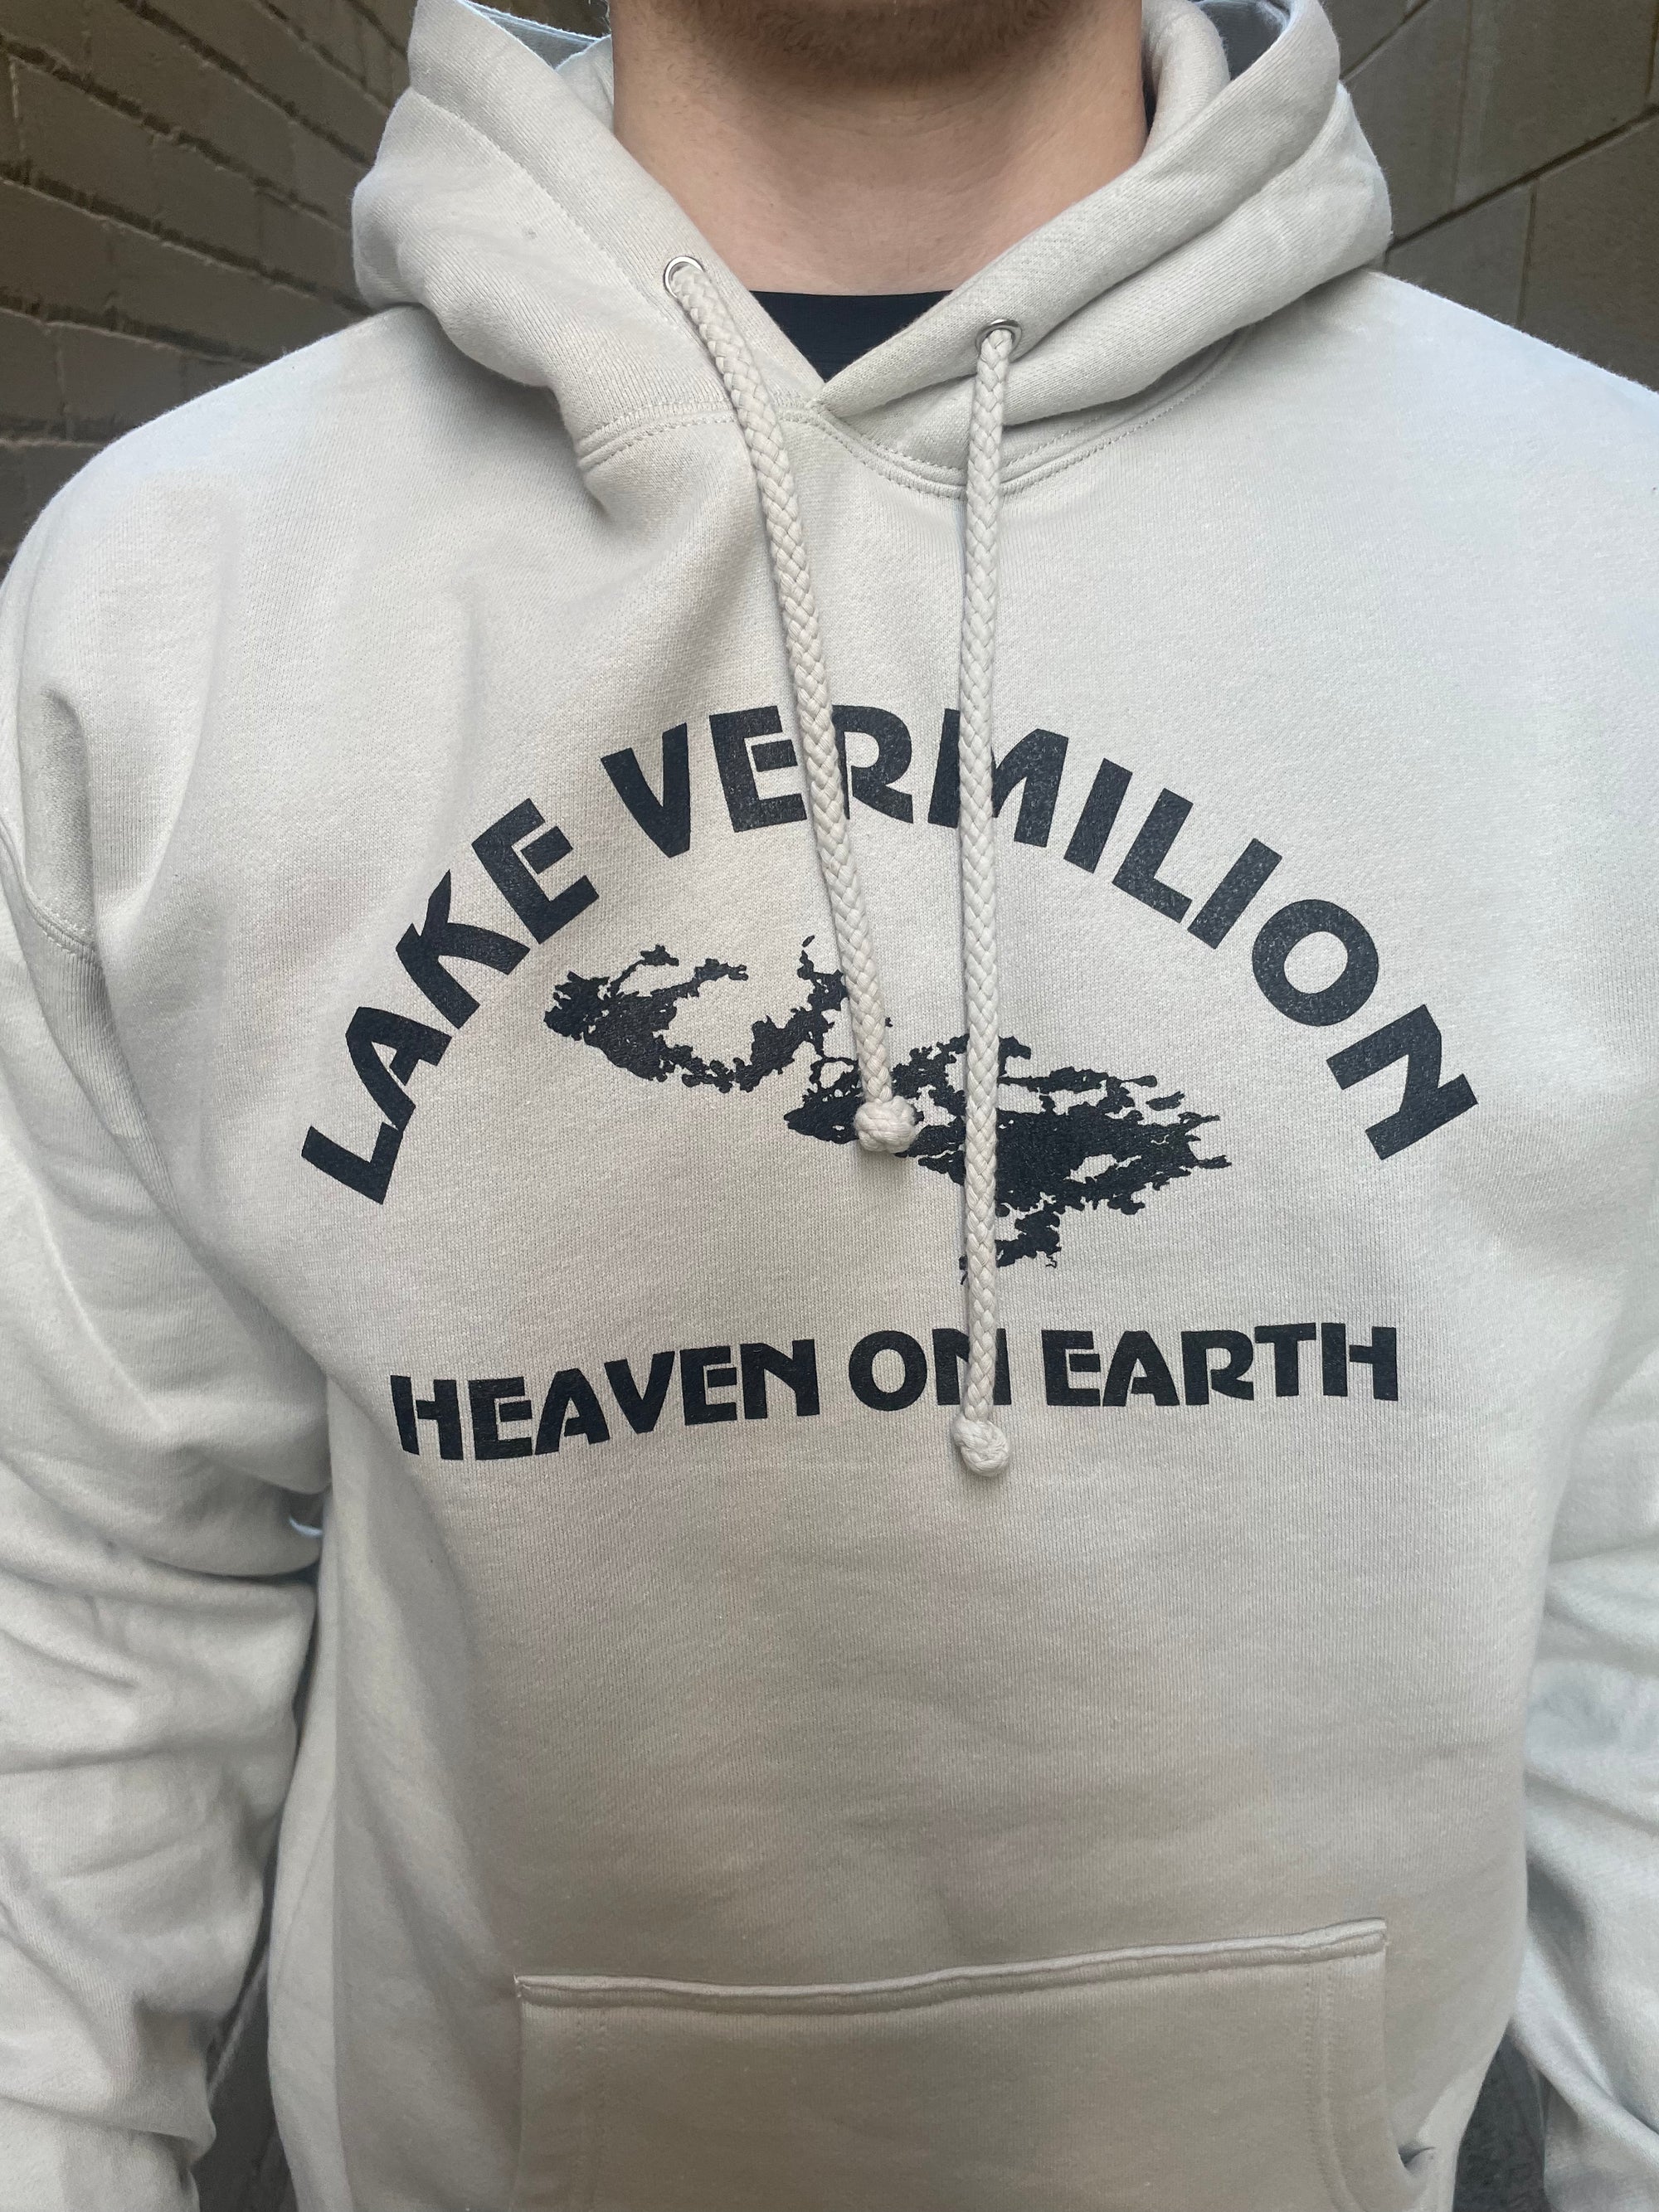 Lake Vermilion